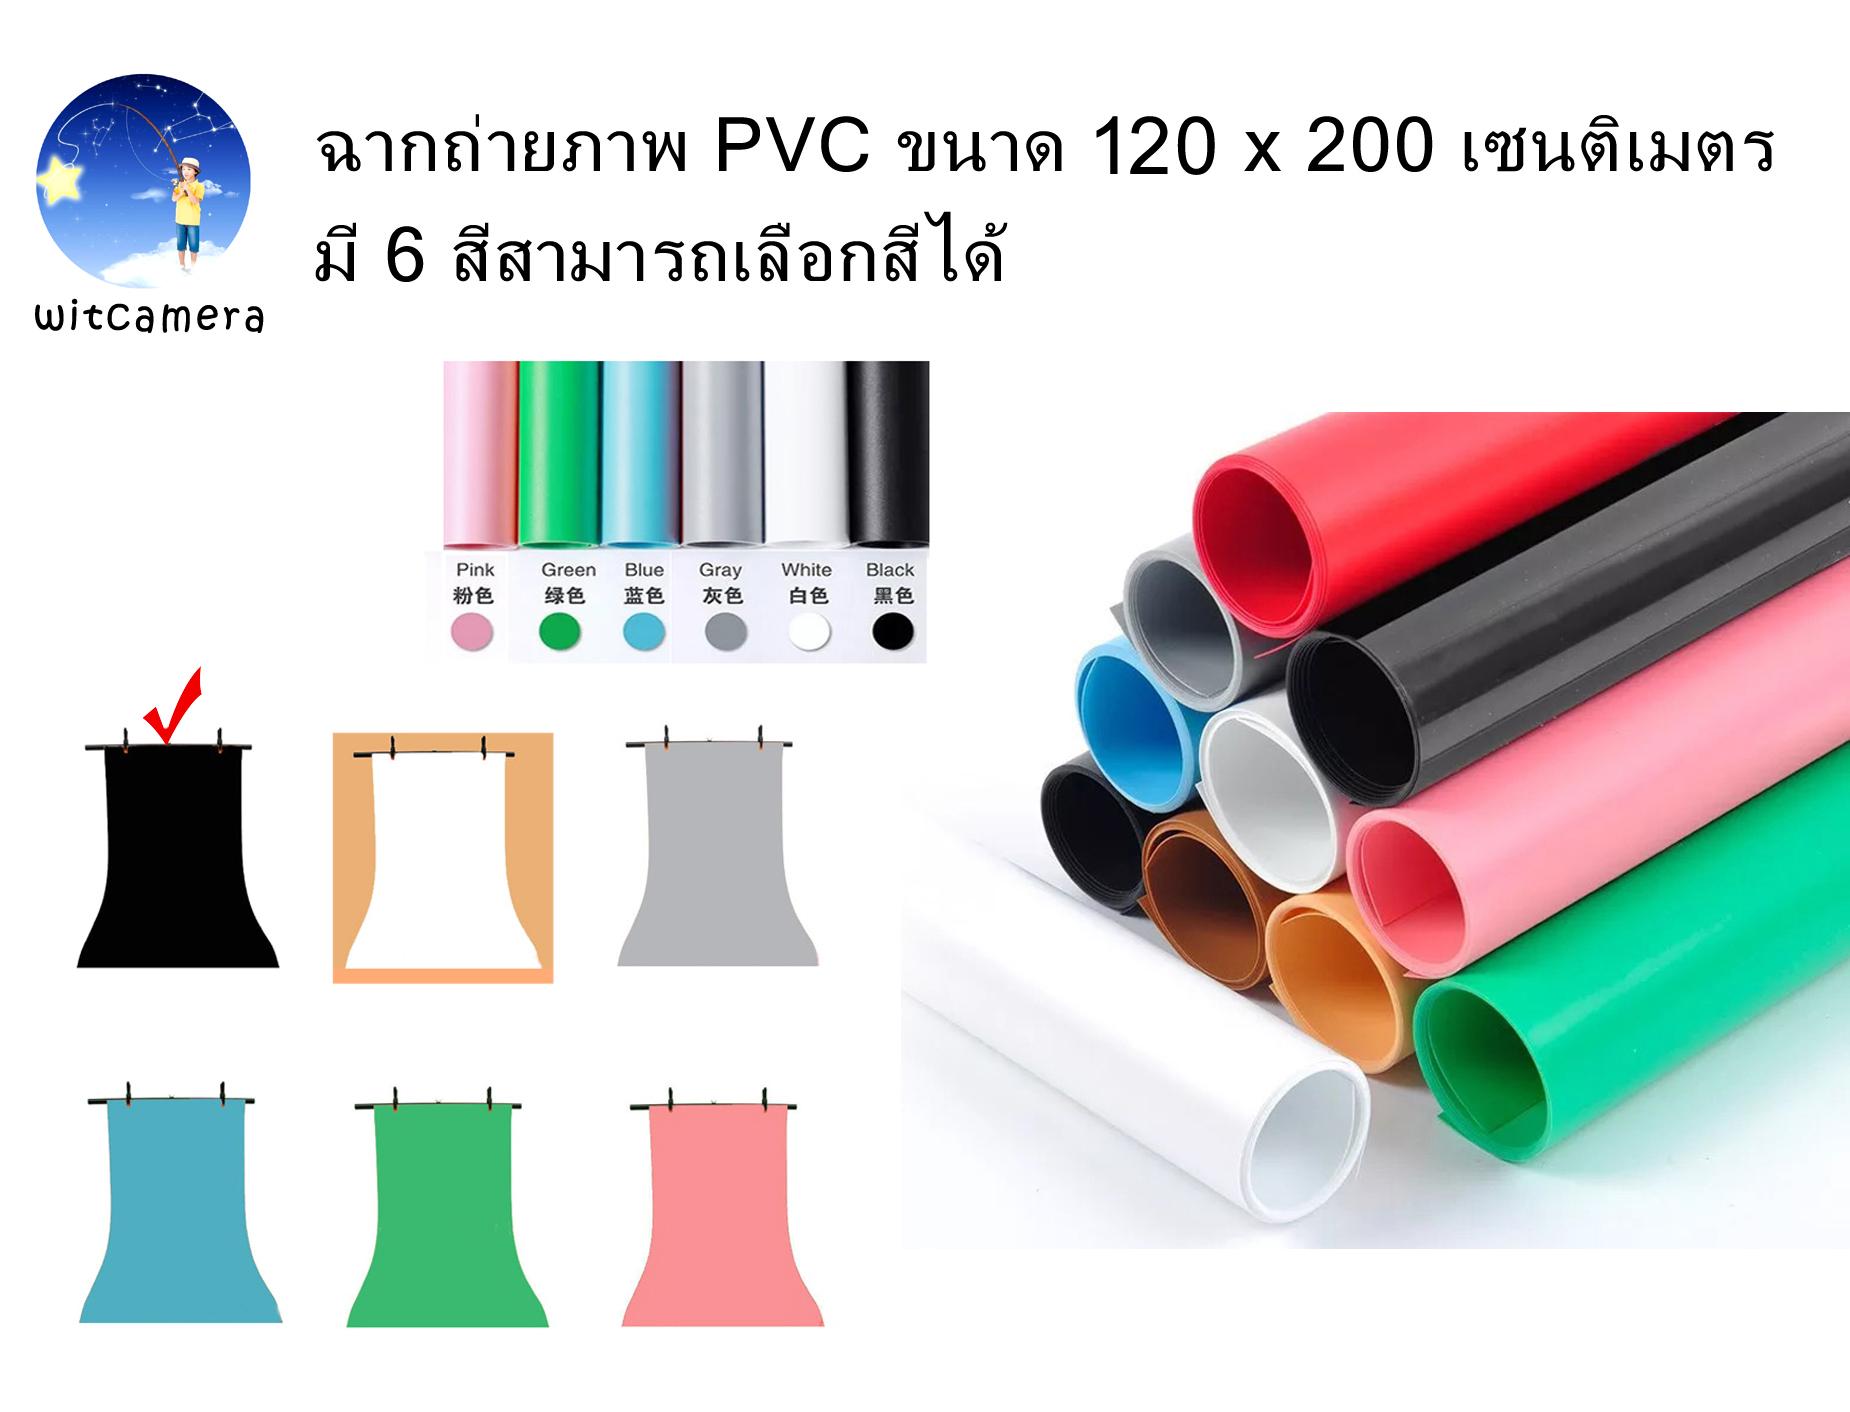 ฉากถ่ายภาพ PVC ขนาด 120 x 200 เซนติเมตร มี 6 สีสามารถเลือกสีได้ PVC photo studio backdrop 120cm x 200cm have 6 colors for choosing